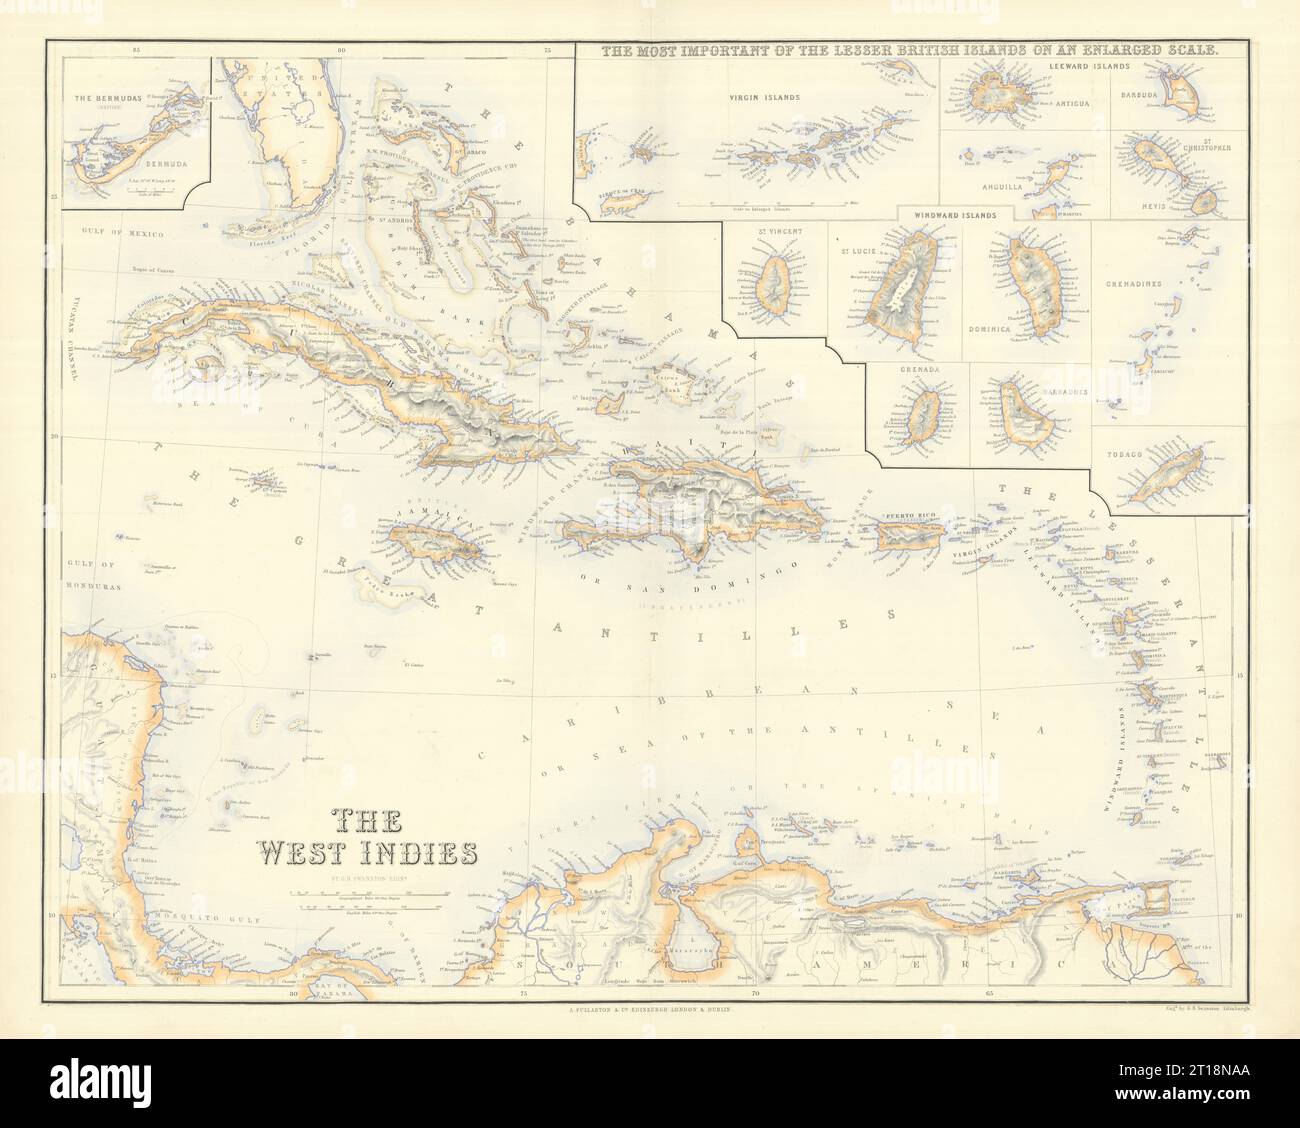 Antilles britanniques. Îles du vent de la Vierge Leeward. Bermudes. CARTE DE SWANSTON 1860 Banque D'Images